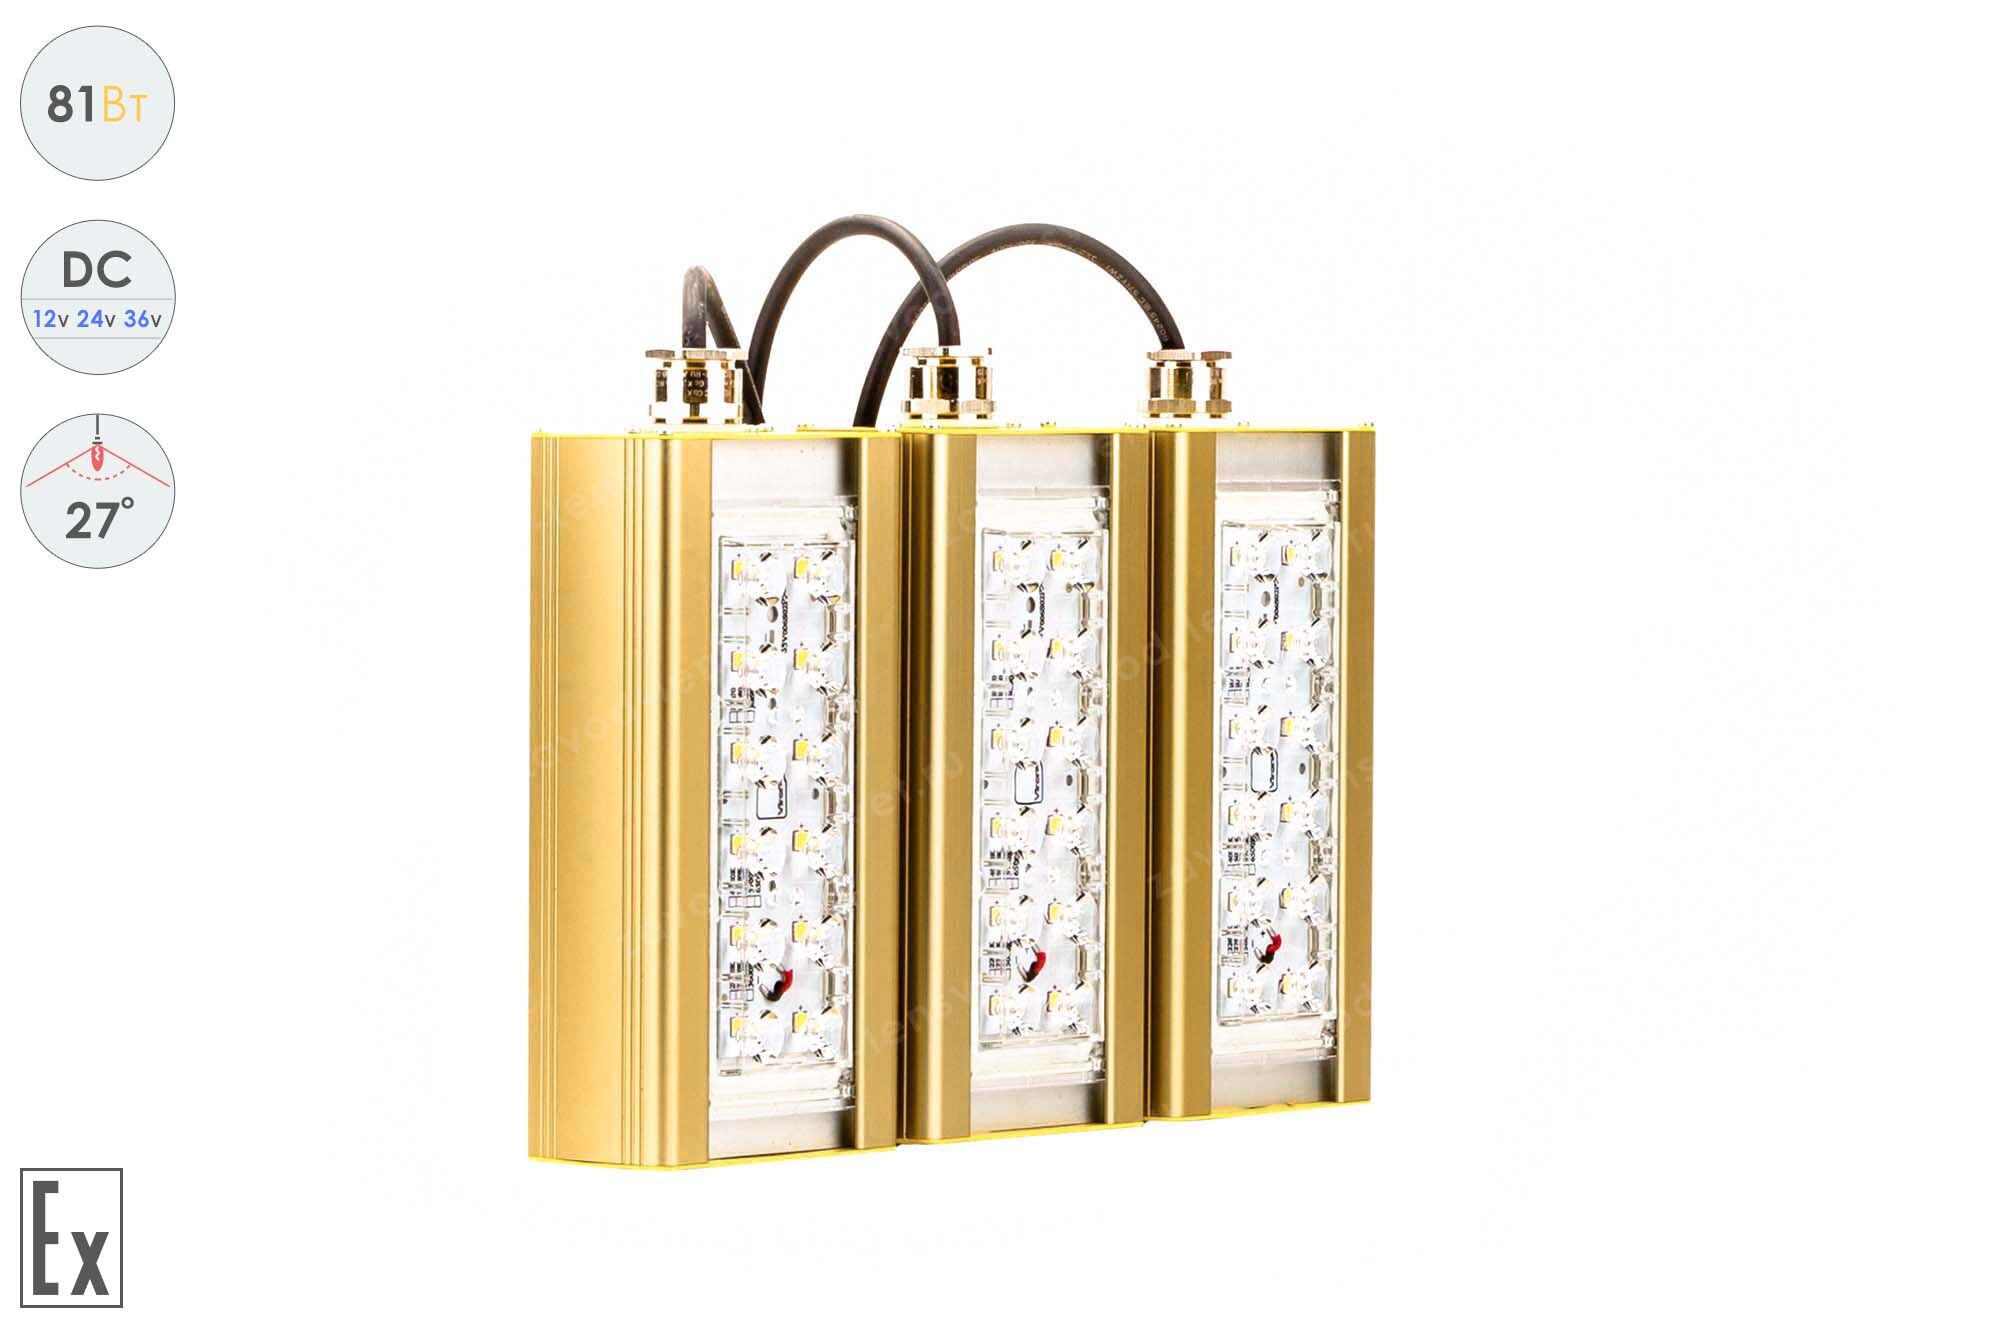 Светодиодный светильник Низковольтный Прожектор Взрывозащищенный GOLD, консоль K-3, 81 Вт, 27°